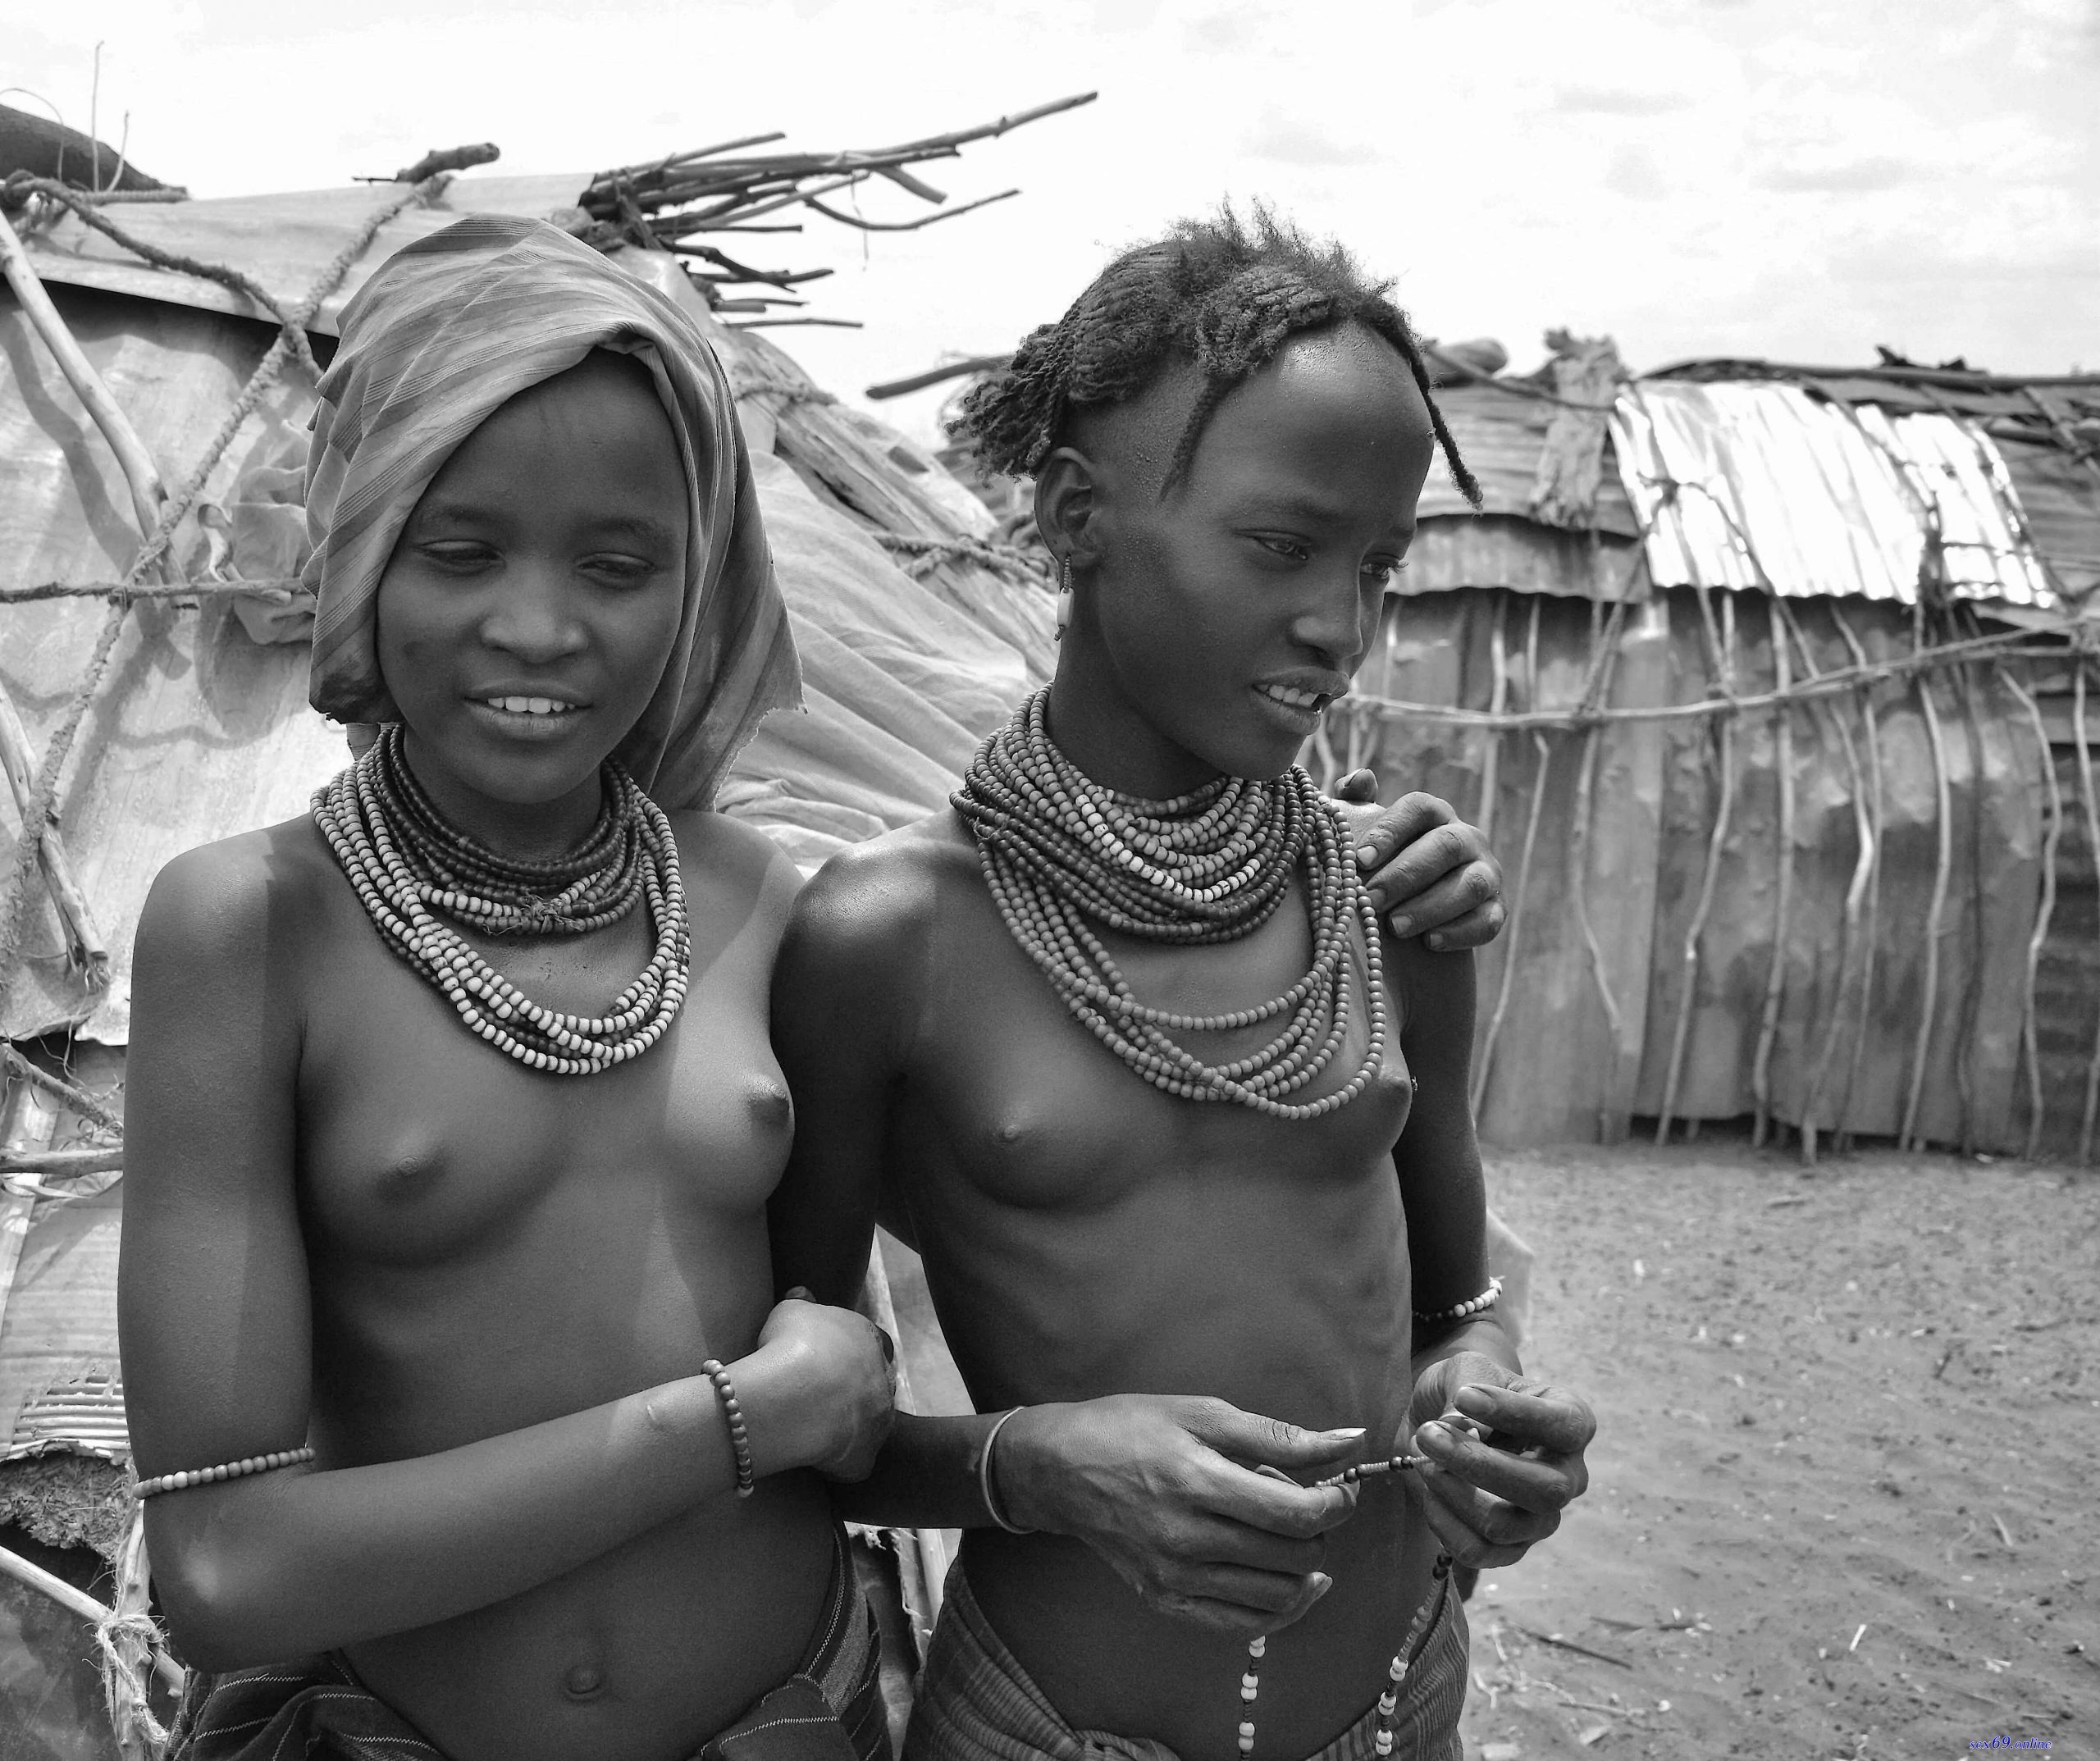 dana ruben share nude african tribe photos